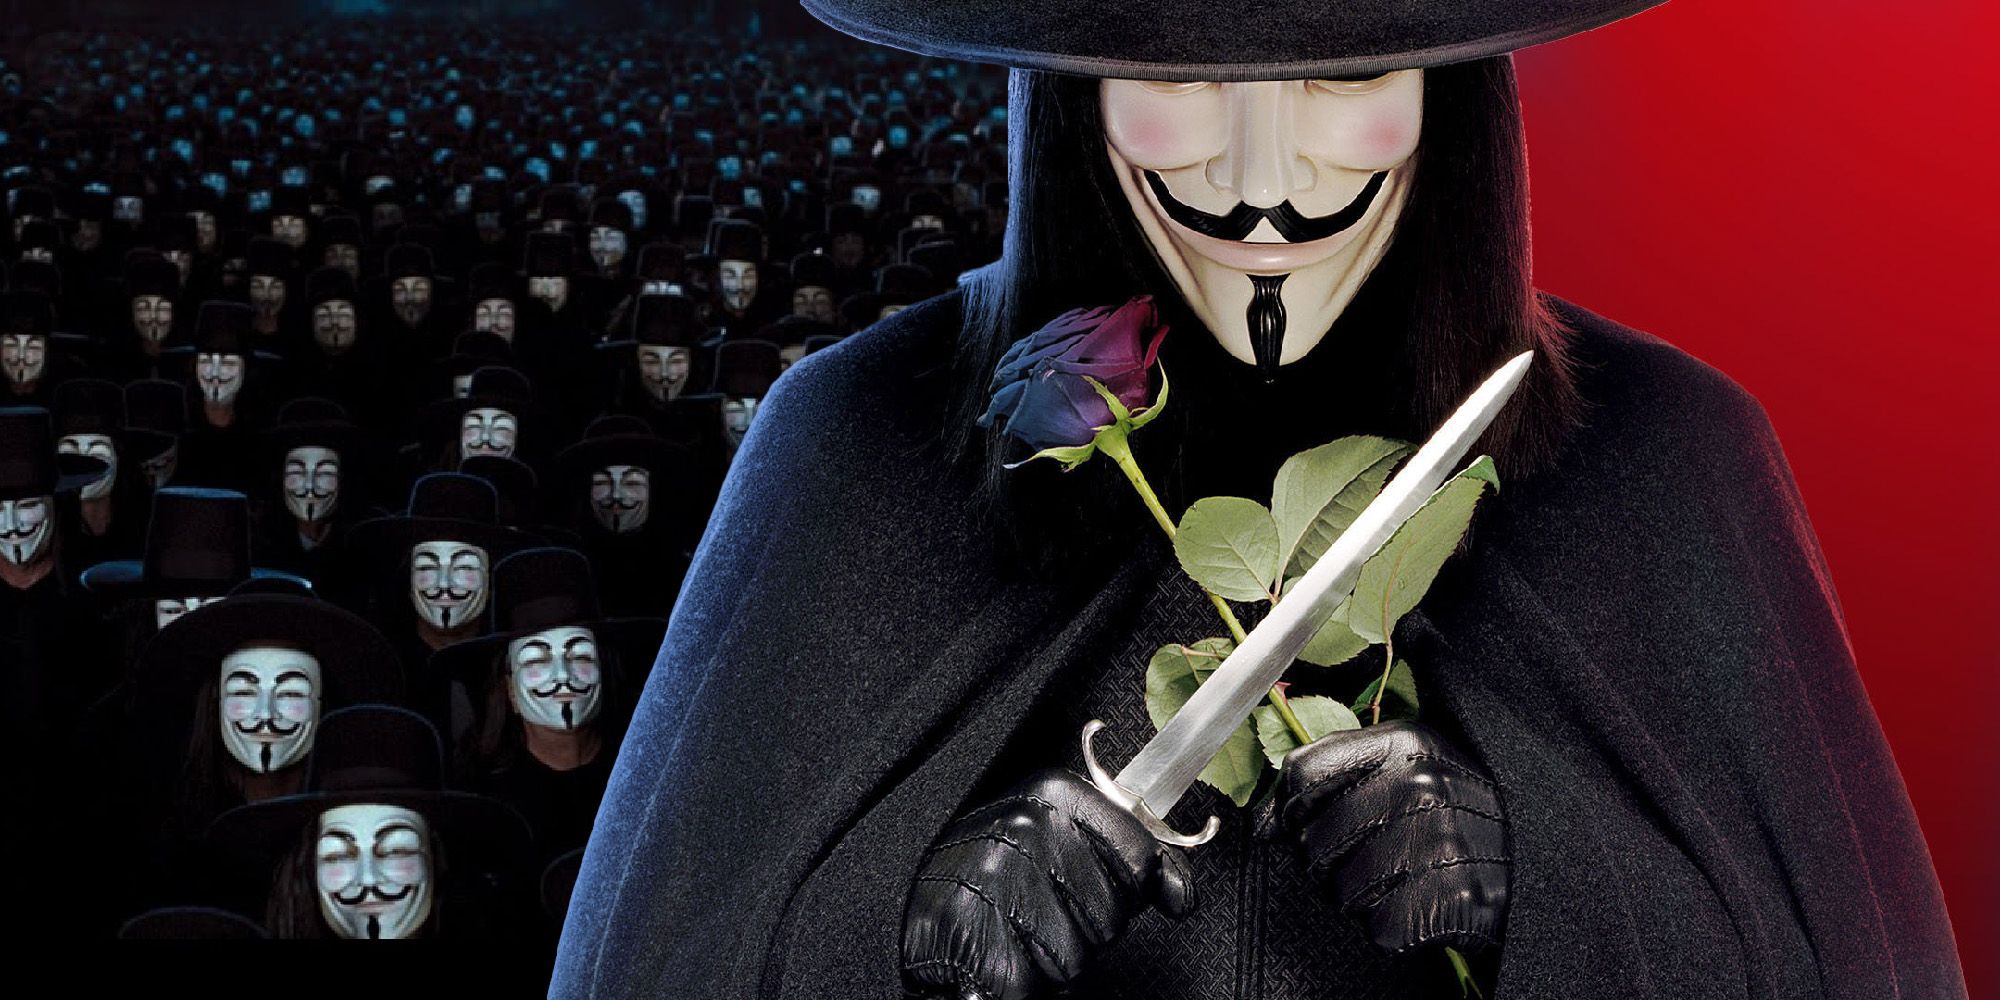 V for Vendetta Ending Explained